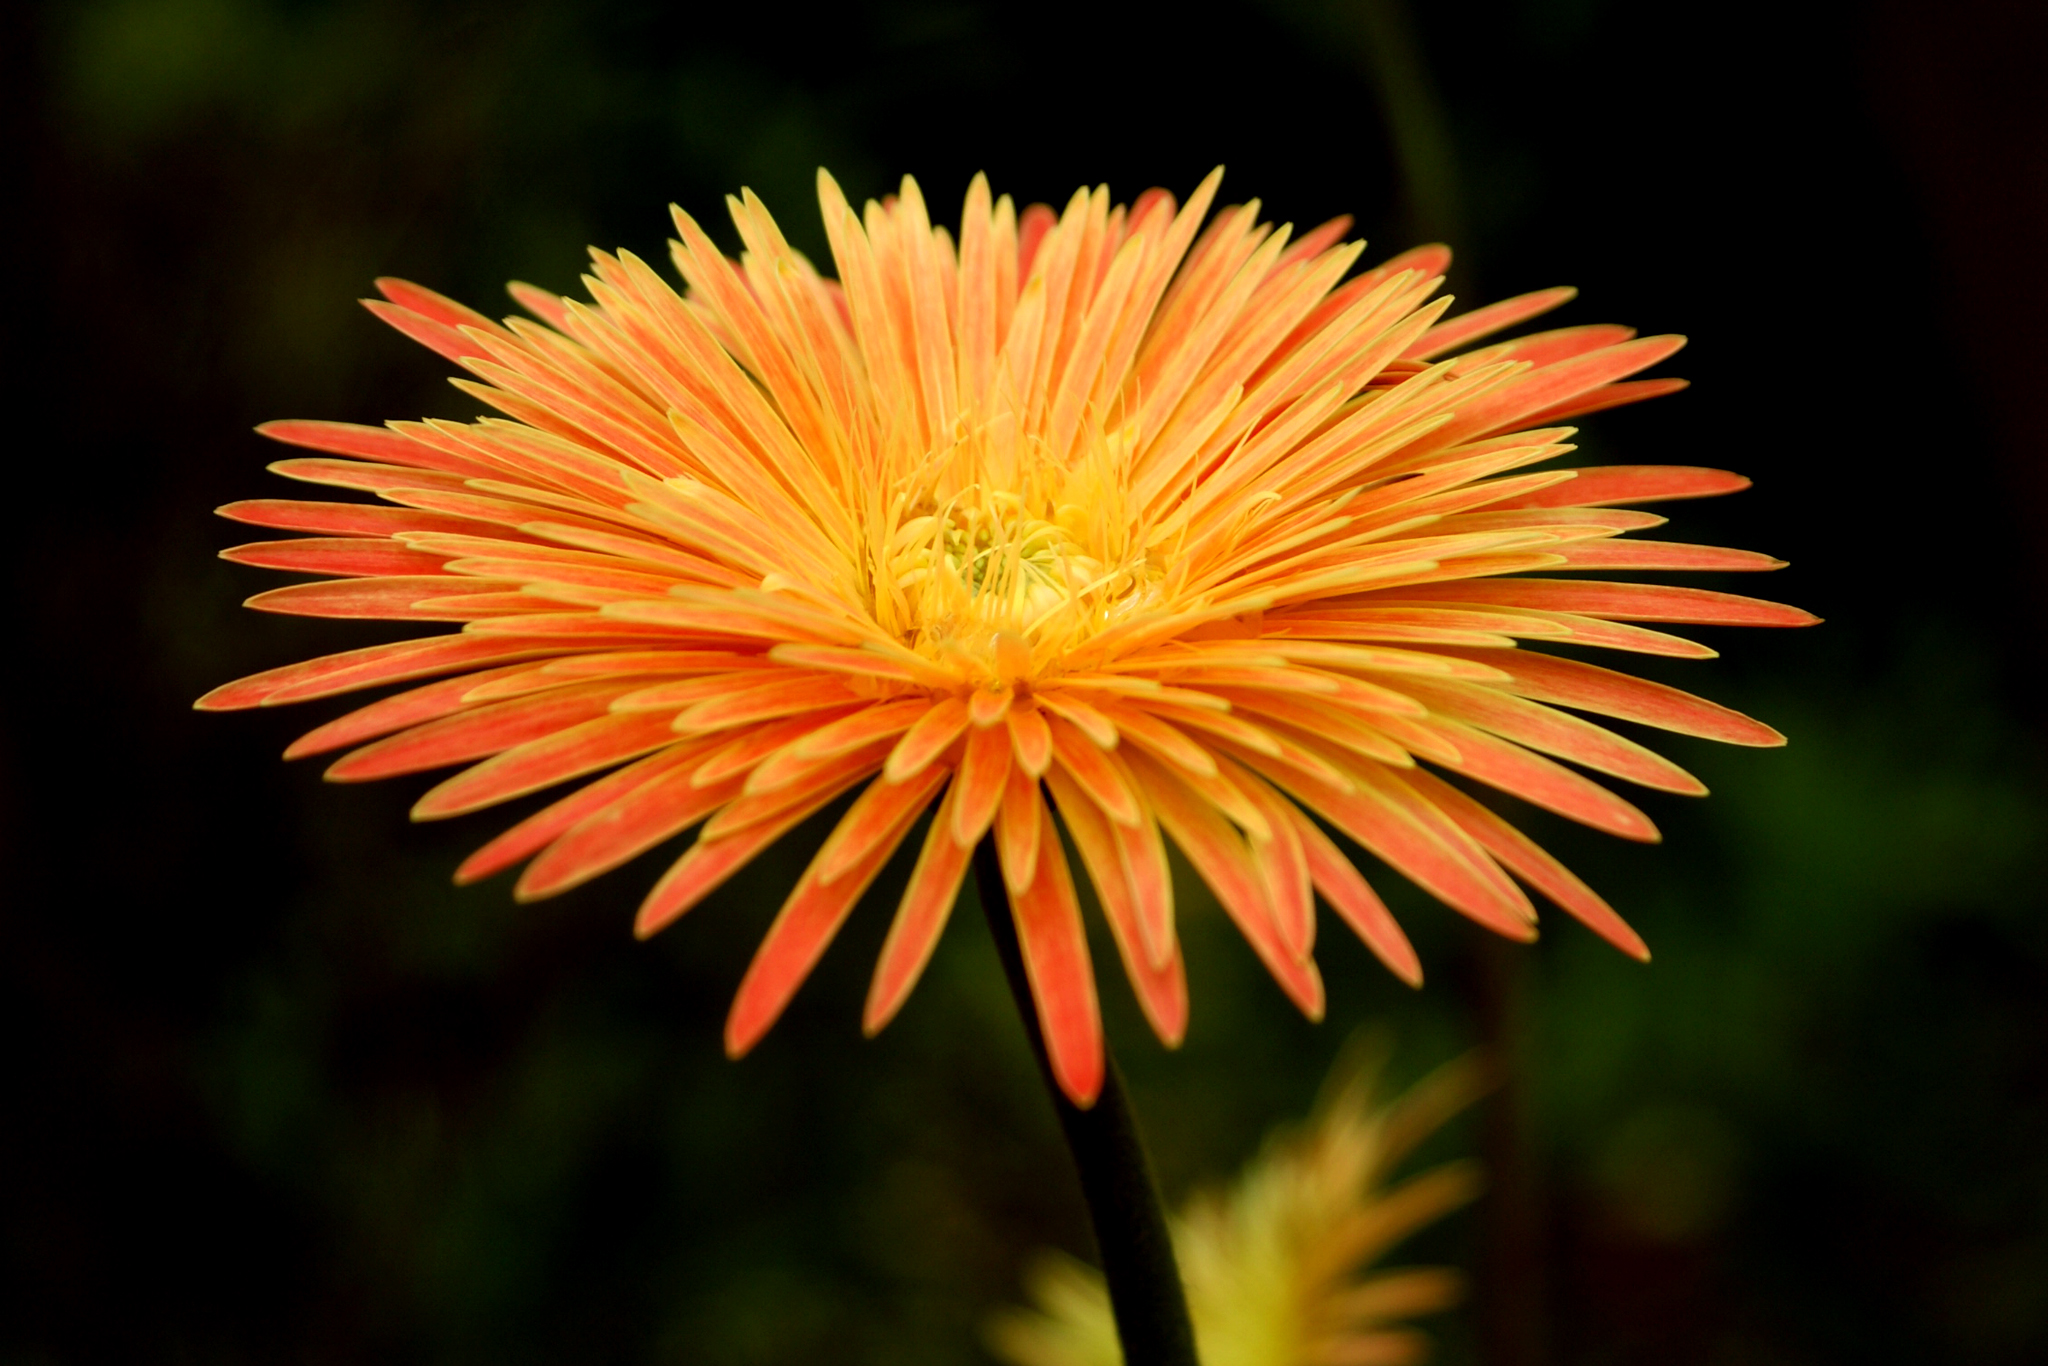 File:A multi petal flower.jpg - Wikimedia Commons